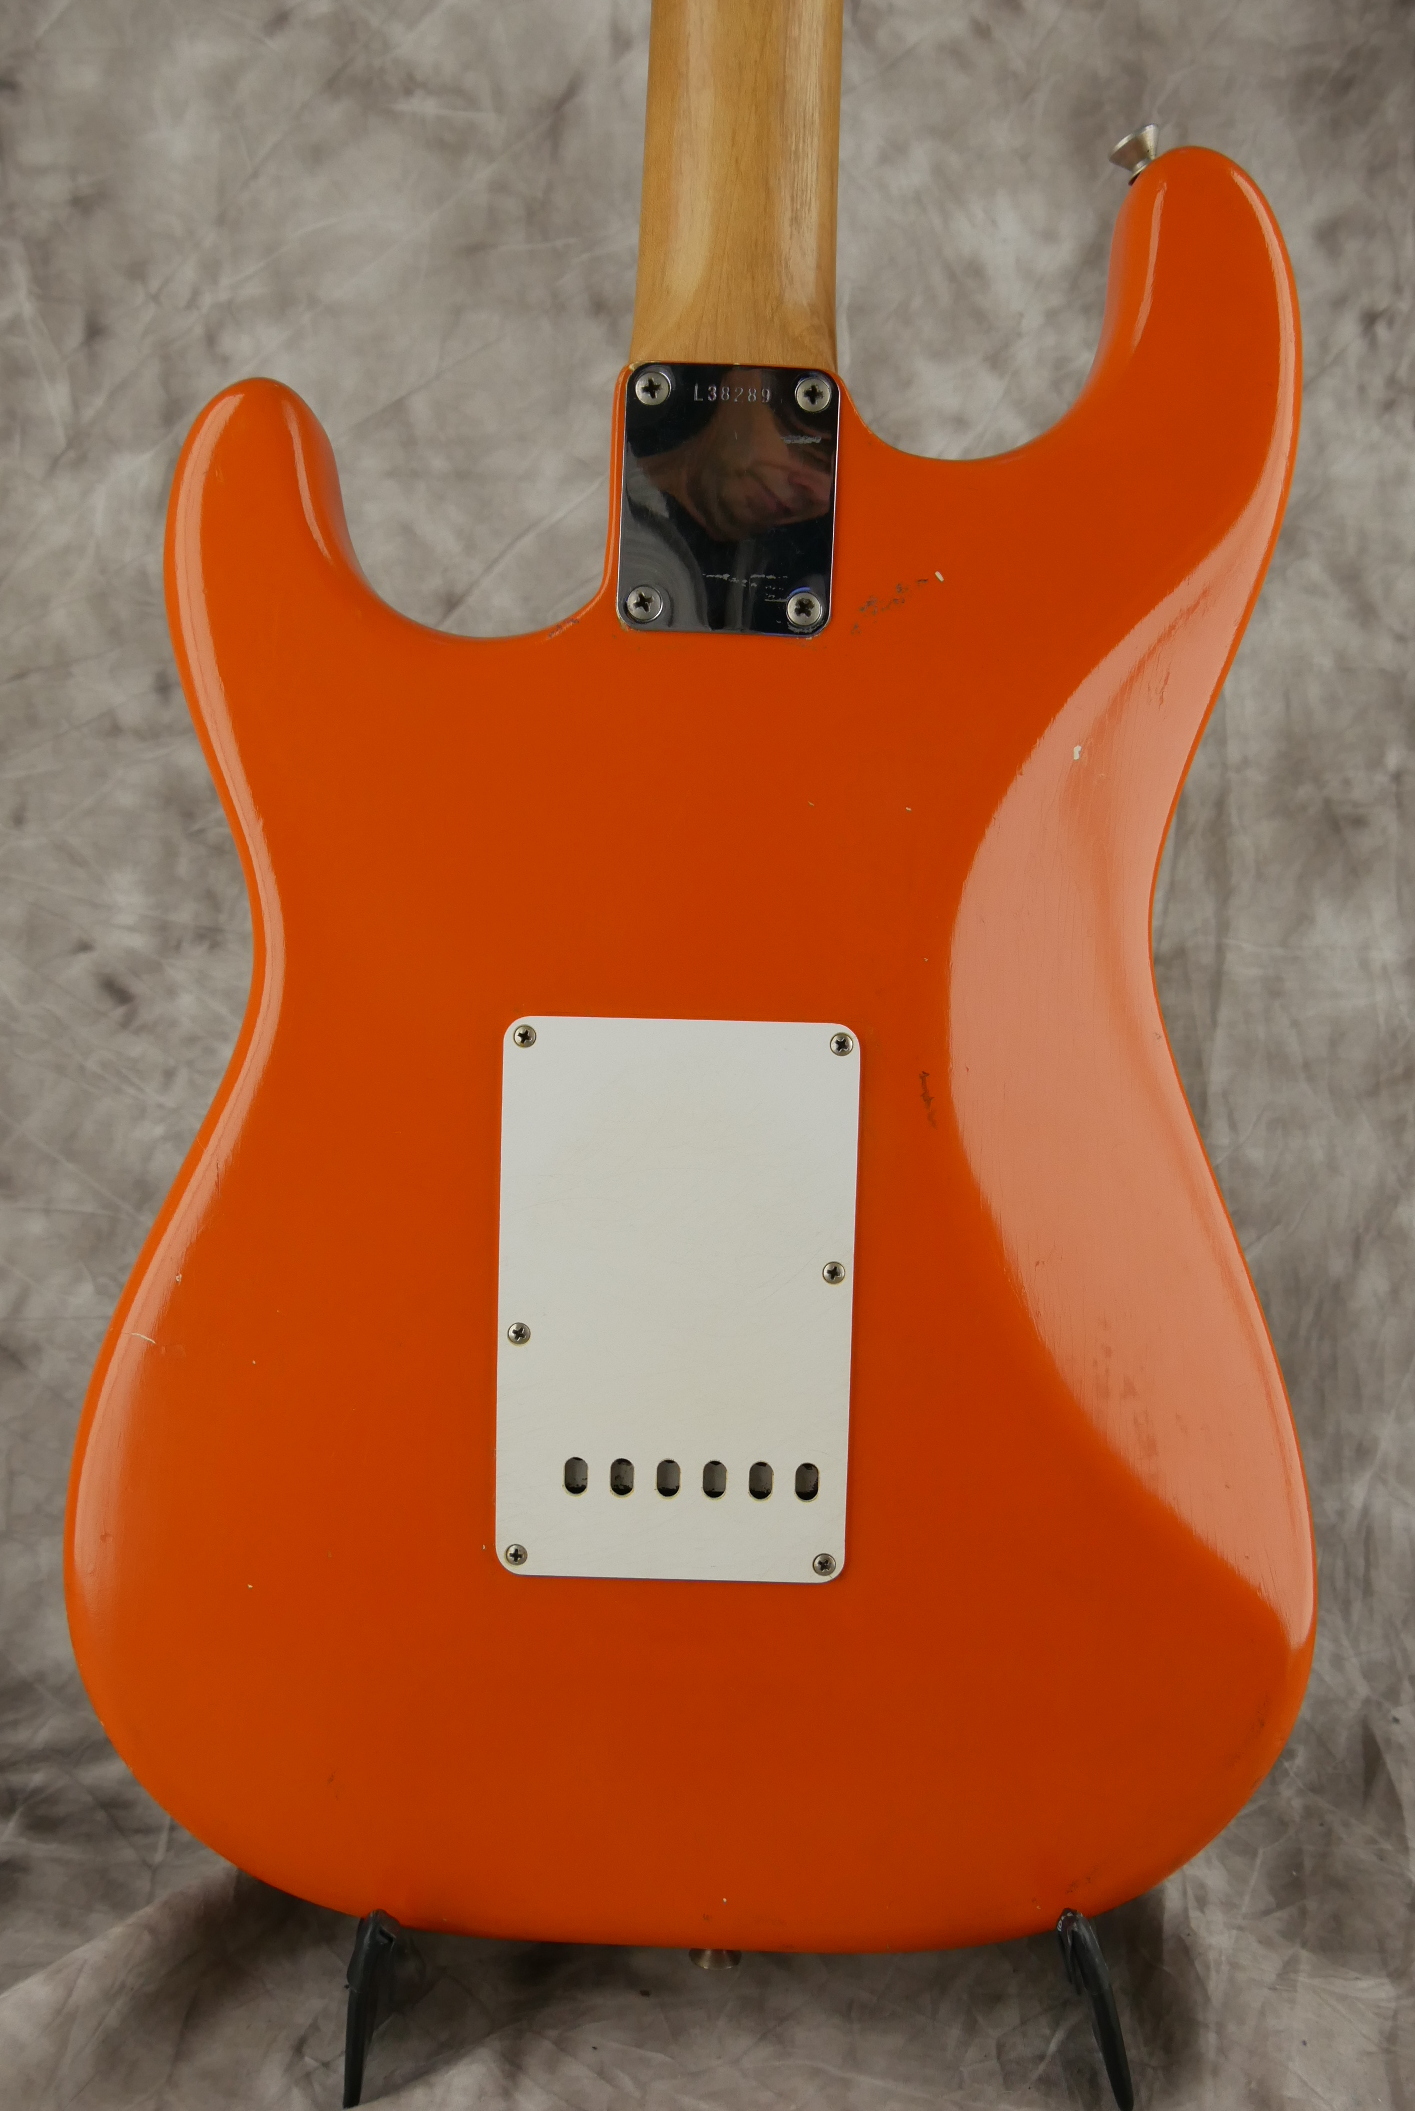 Fender-Stratocaster-1964-orange-refinish-004.JPG